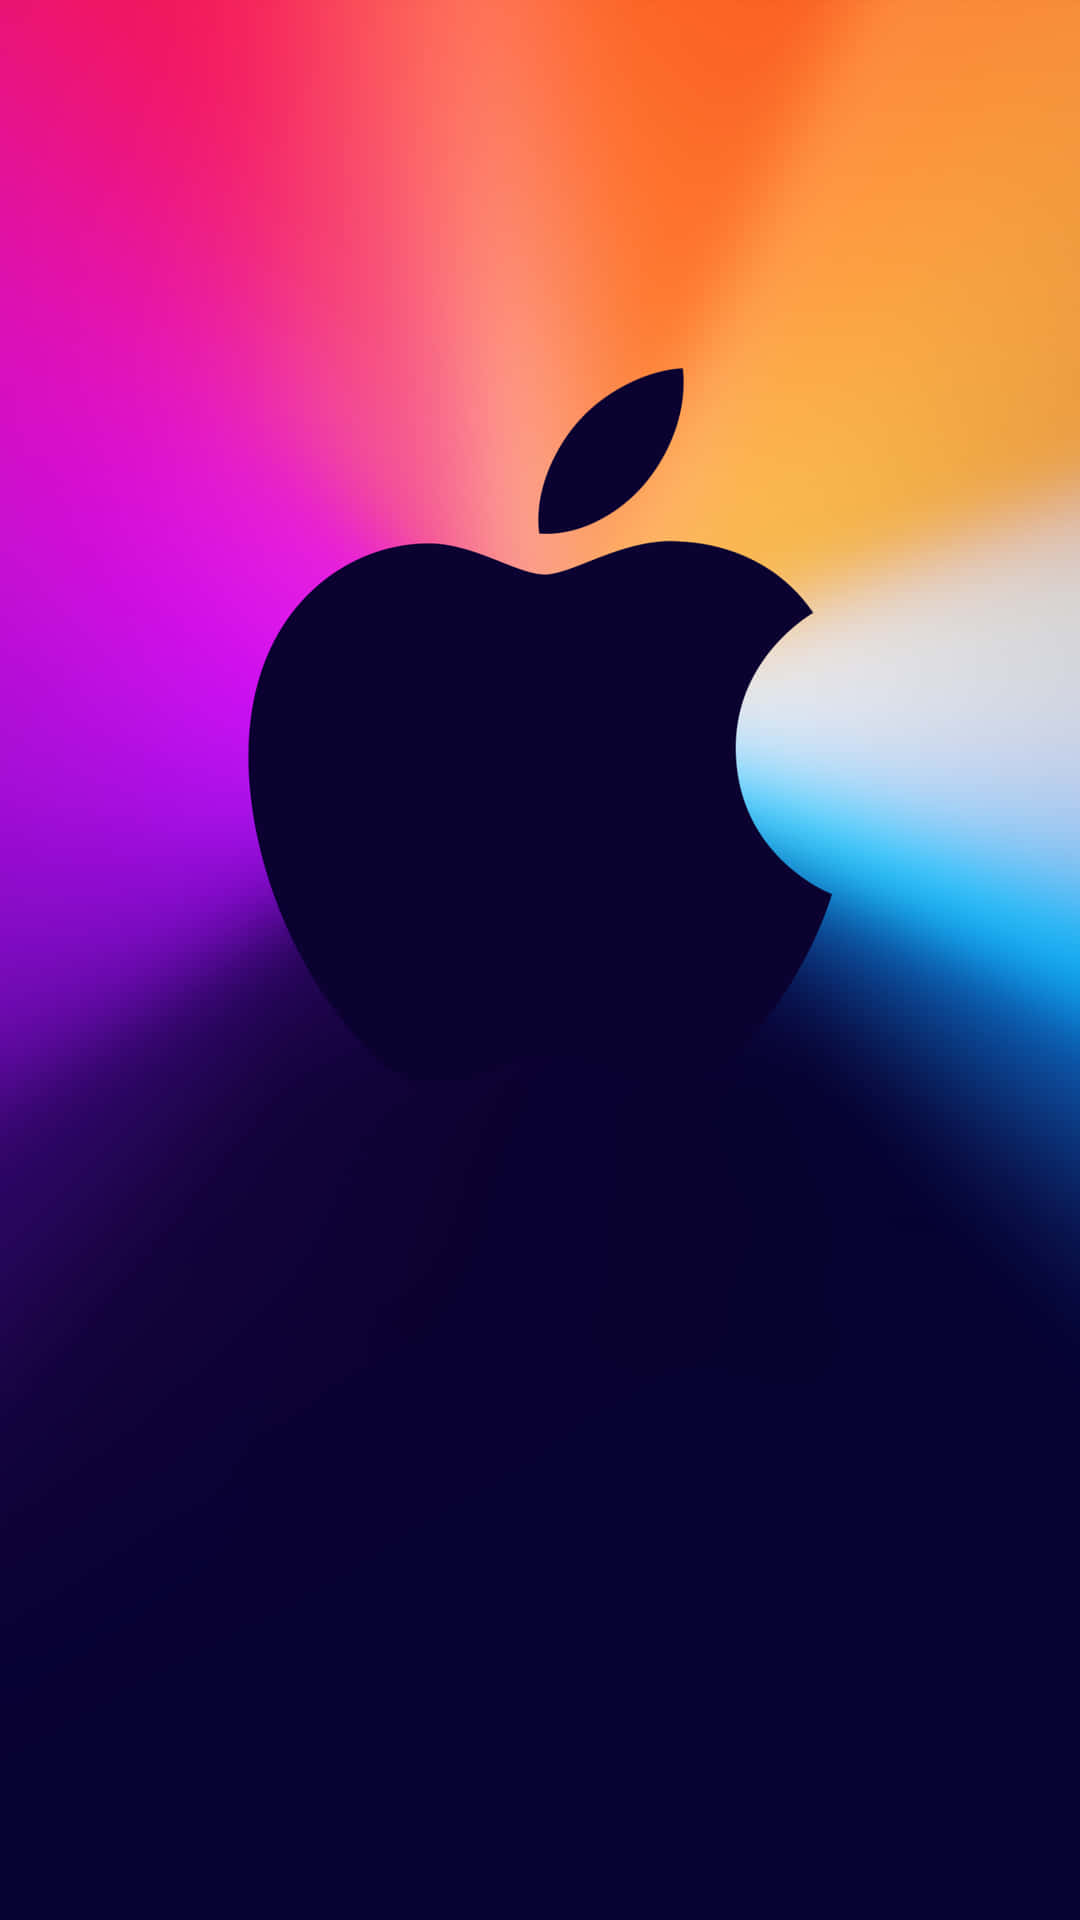 Einenahaufnahme Der Rückseite Des Pixel 3 Mit Apple-branding.